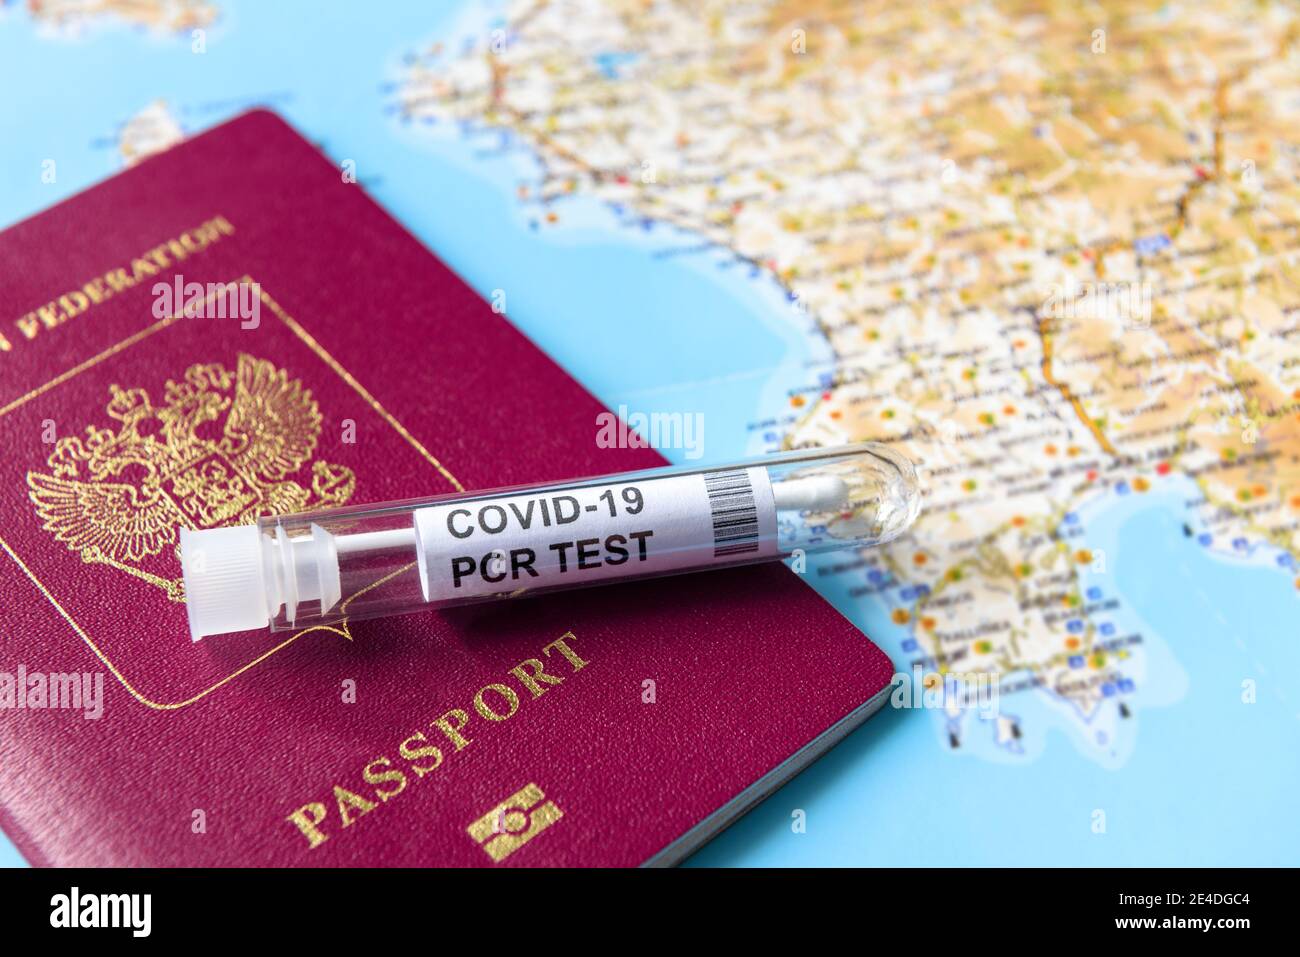 Coronavirus, voyage et test concept, tube pour test PCR COVID-19 et passeport sur carte touristique. Diagnostics COVID en raison de restrictions et de verrouillage. W Banque D'Images